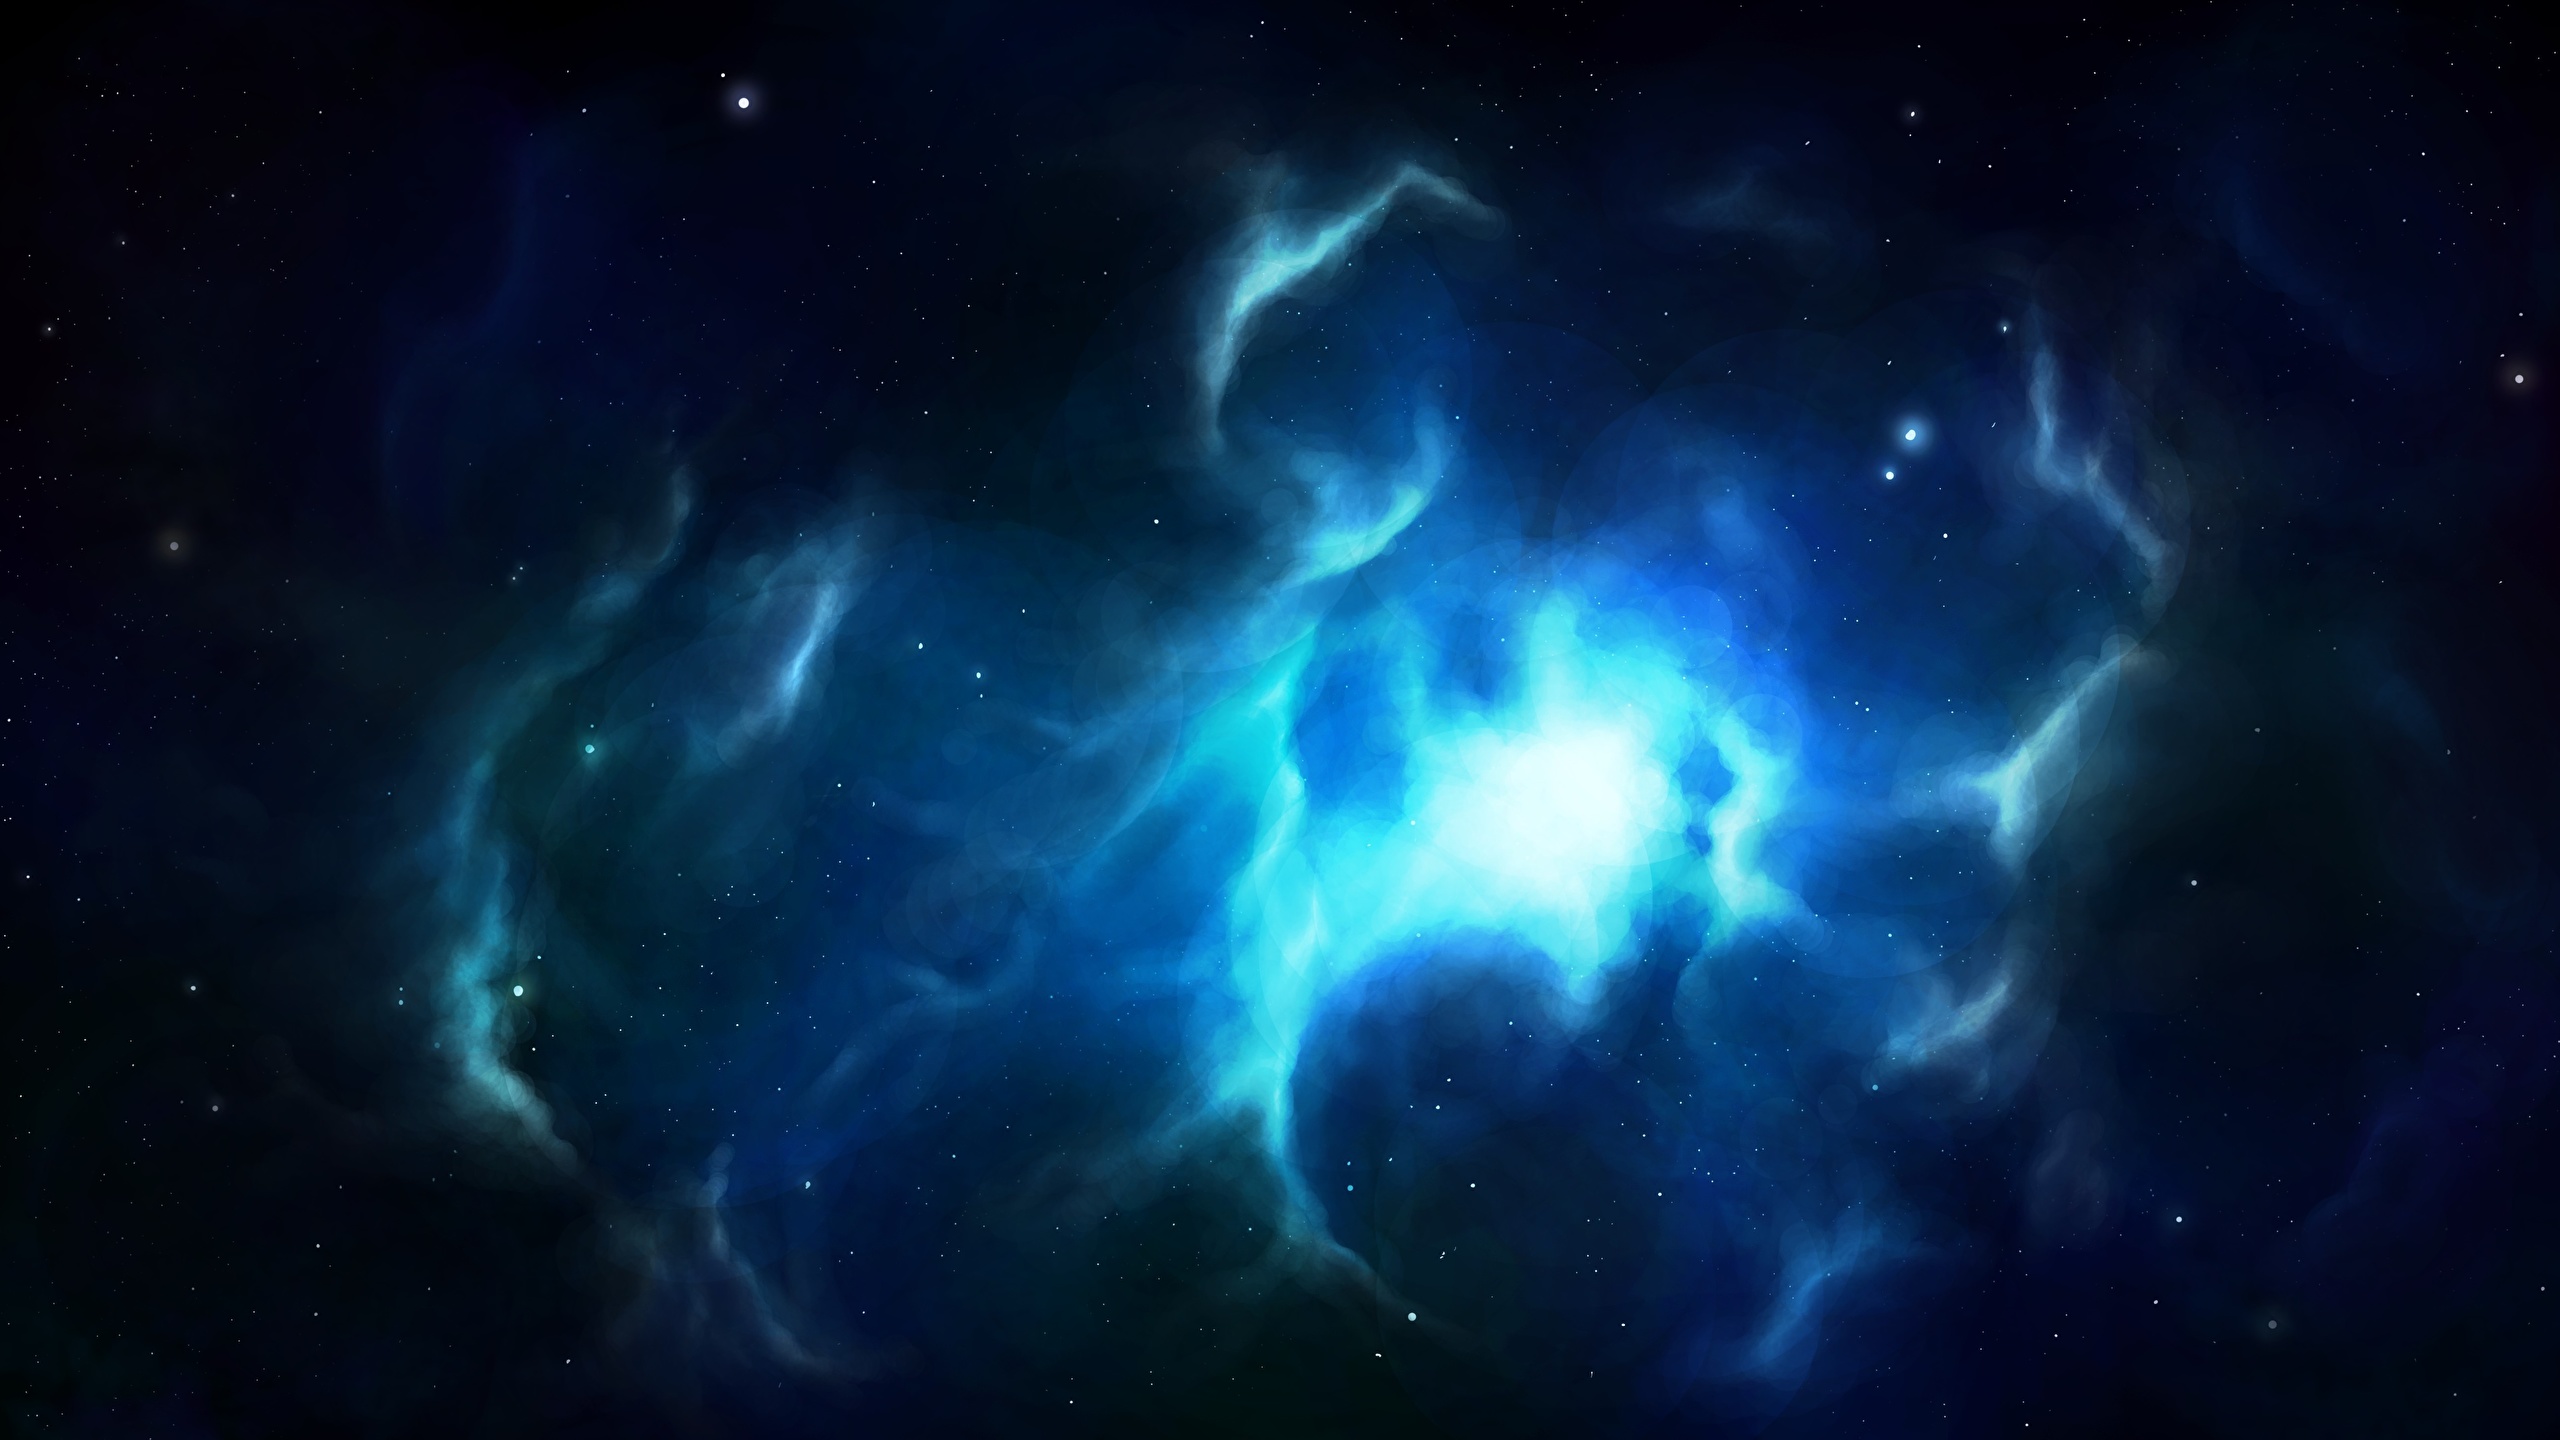 壁紙 2560x1440 空間内の星雲 宇宙空間 ダウンロード 写真